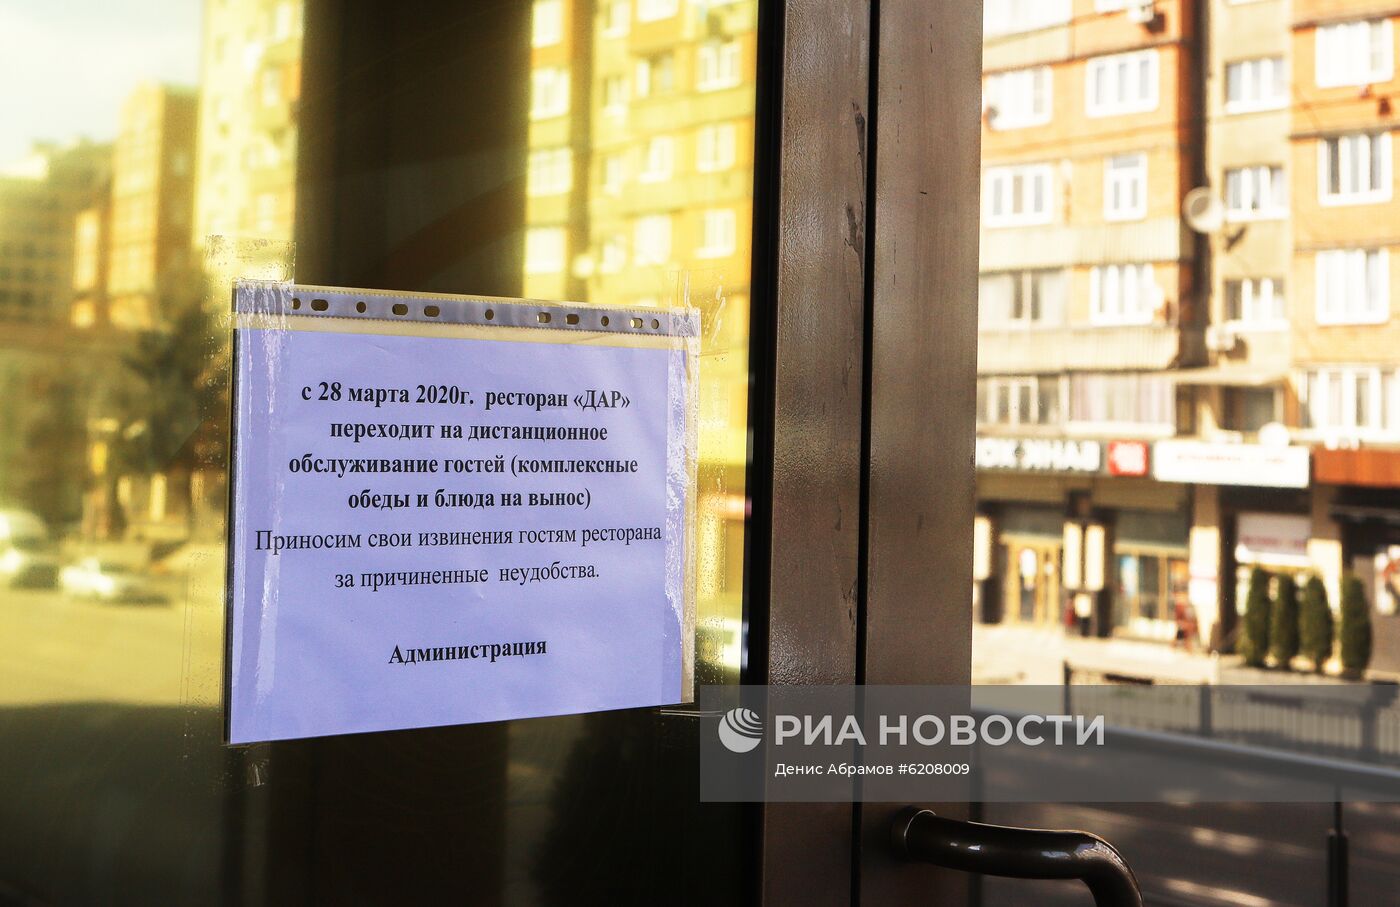 Закрытие культурно-досуговых учреждений в городах России